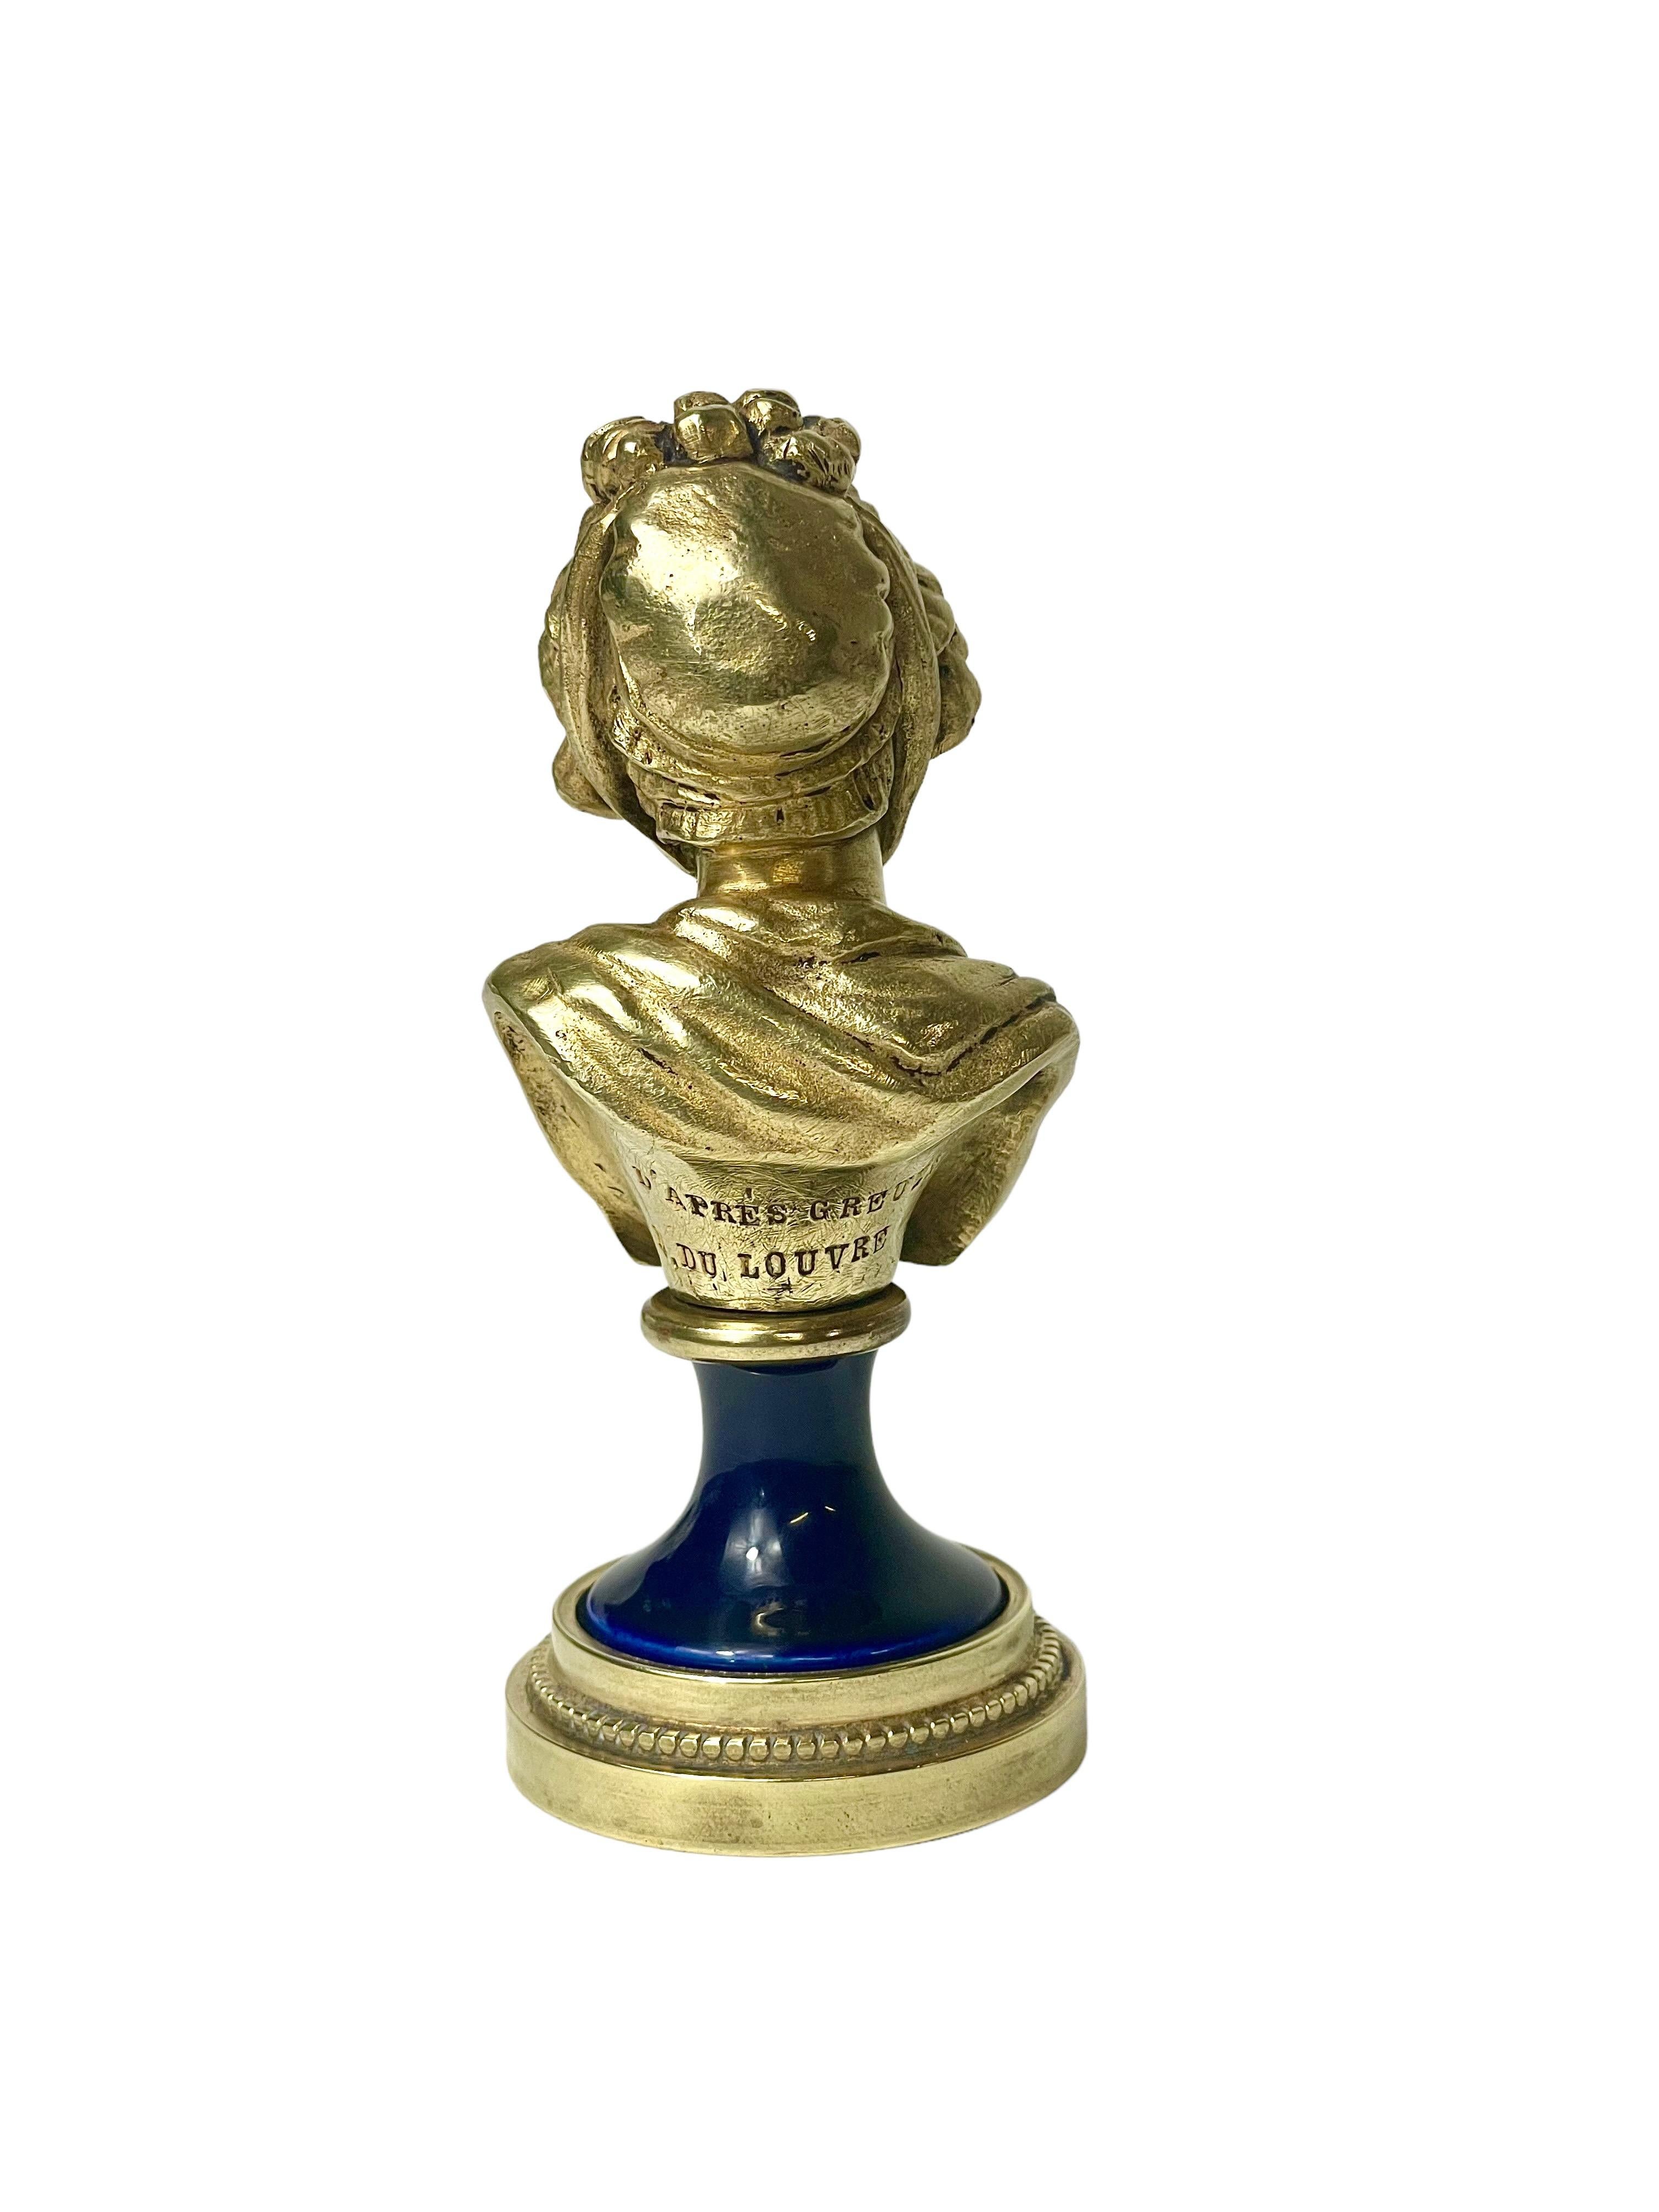 Ravissant buste en bronze doré représentant une élégante jeune femme, avec un bonnet à volants à la mode, des vêtements finement drapés et une expression sereine. Montée sur un socle en porcelaine bleu foncé et bronze, la statuette de style Louis